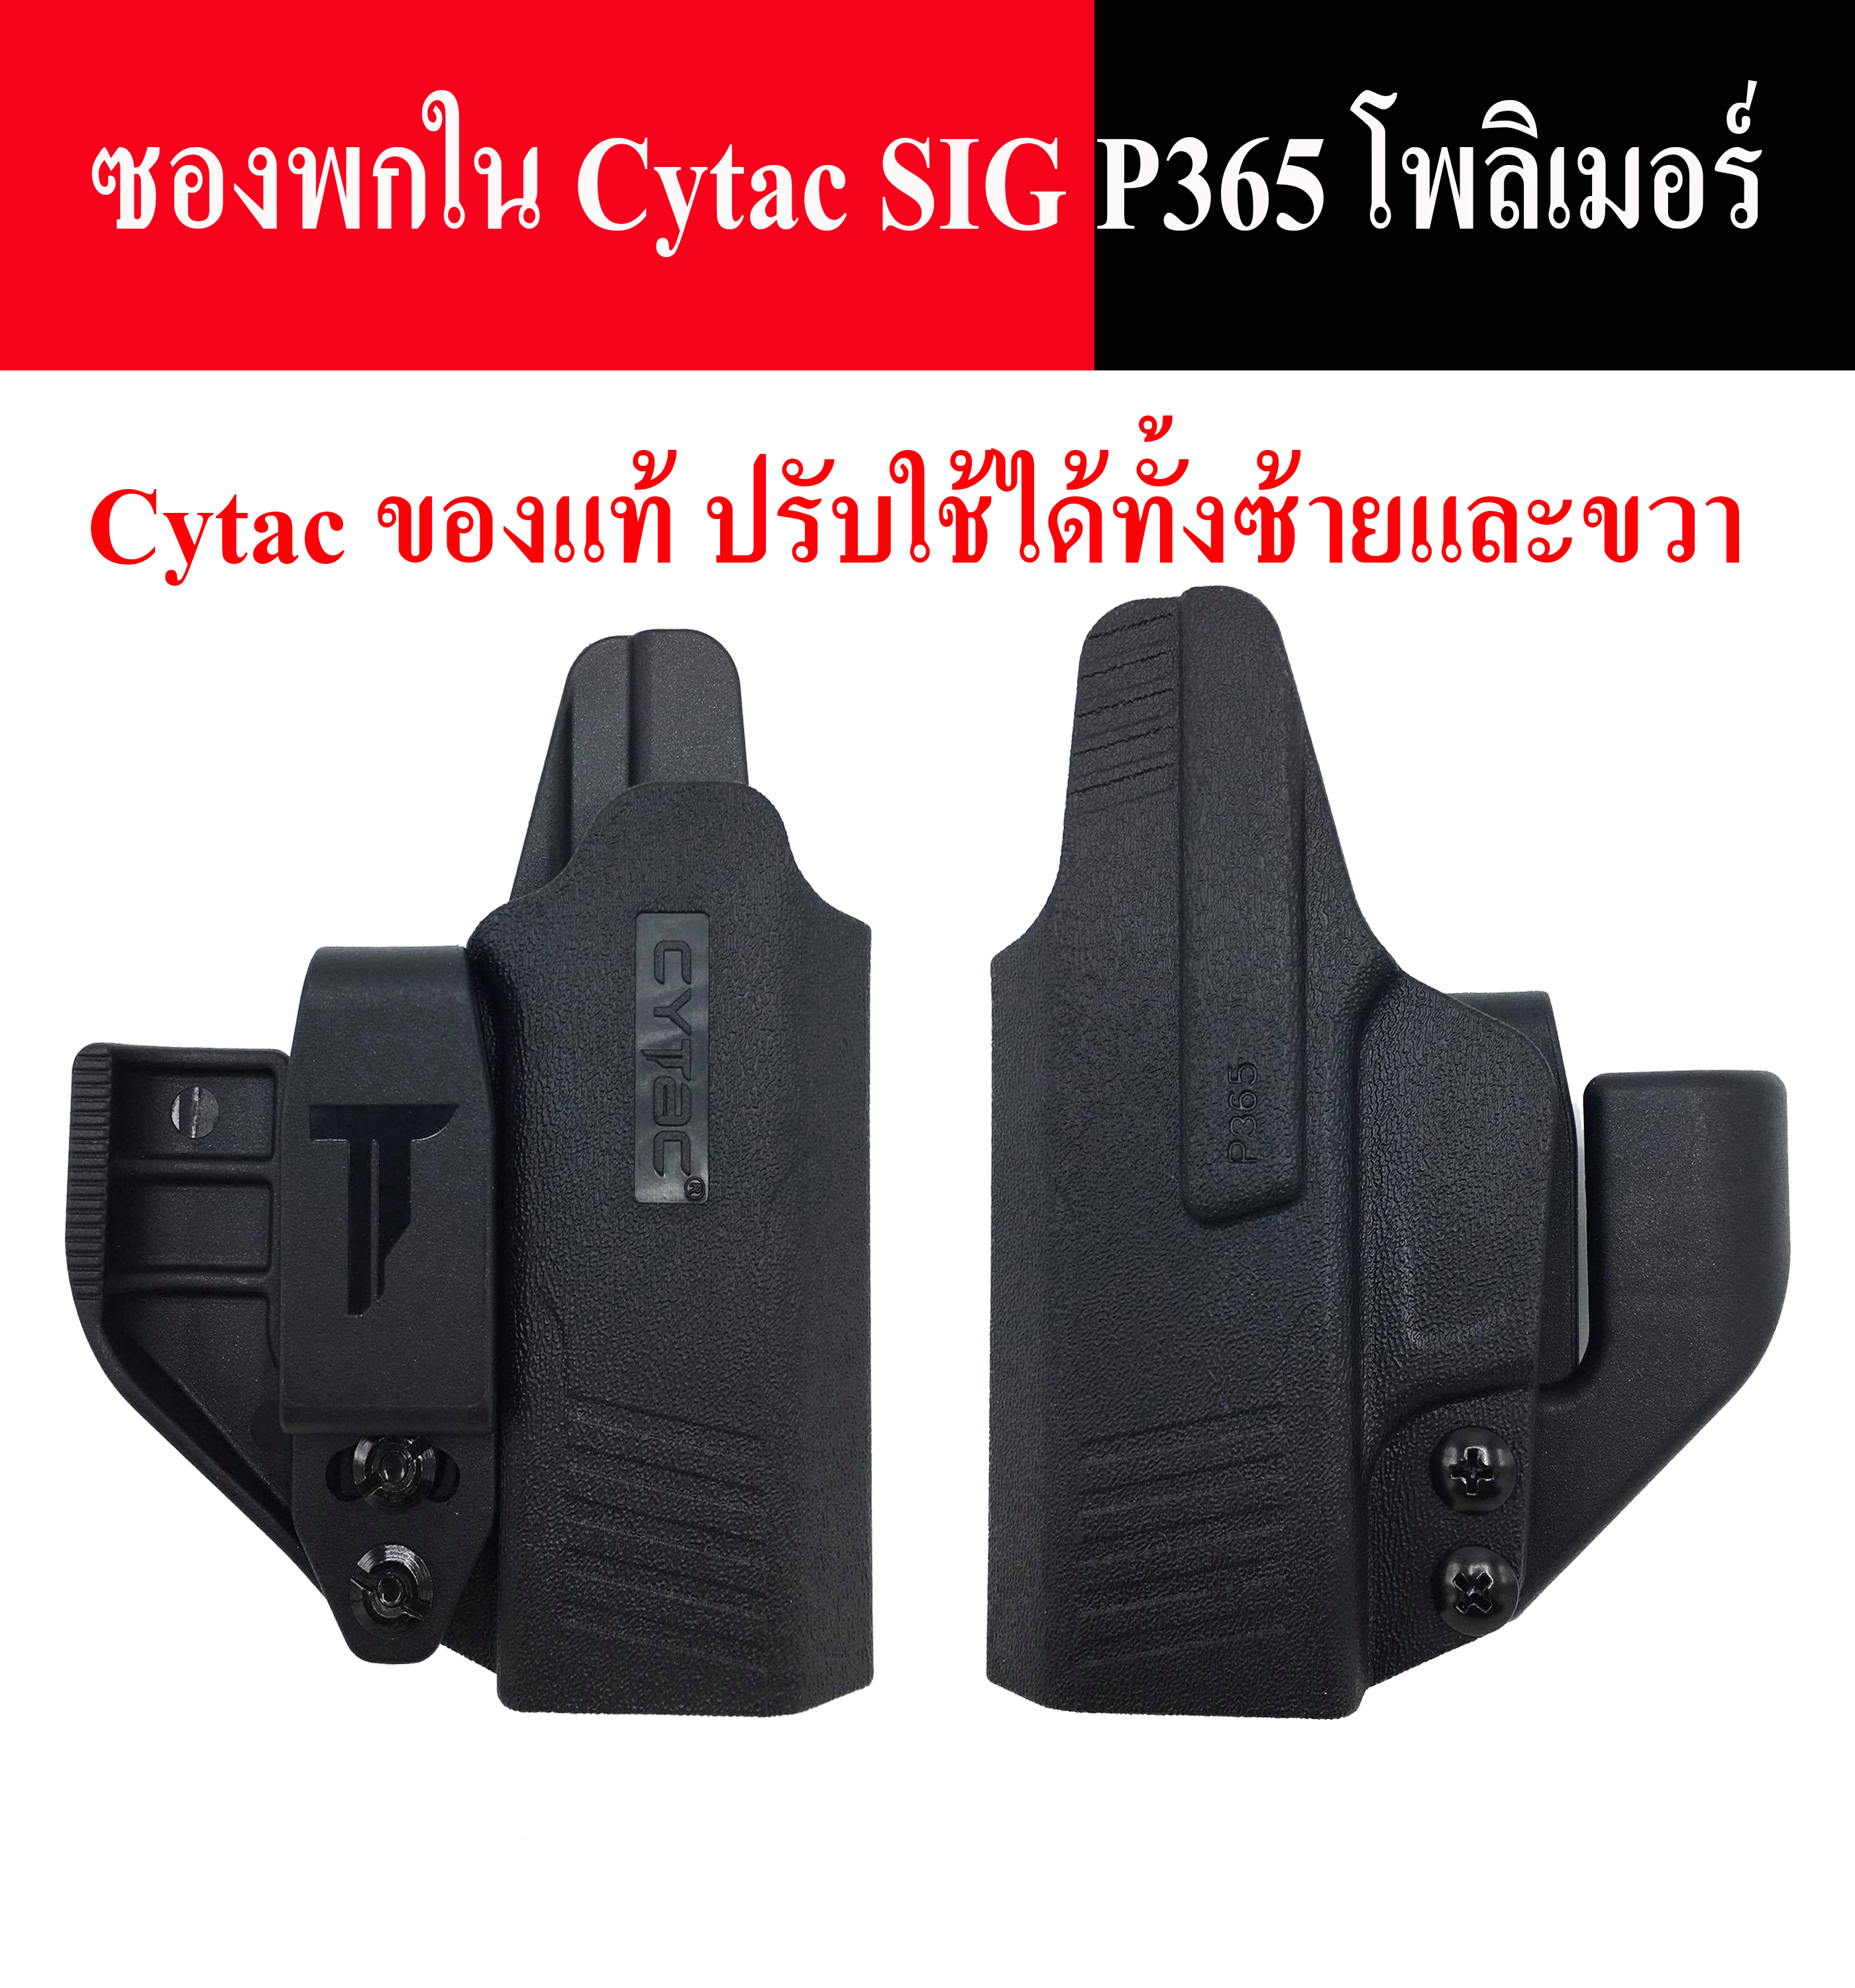 ซองพกใน  Cytac SIG P365 ซองปืนพกใน p365 โพลิเมอร์ สามารถปรับใช้ได้ทั้งคนที่ถนัดซ้ายและถนัดขวา ซื้อตัวเดียวคุ้ม